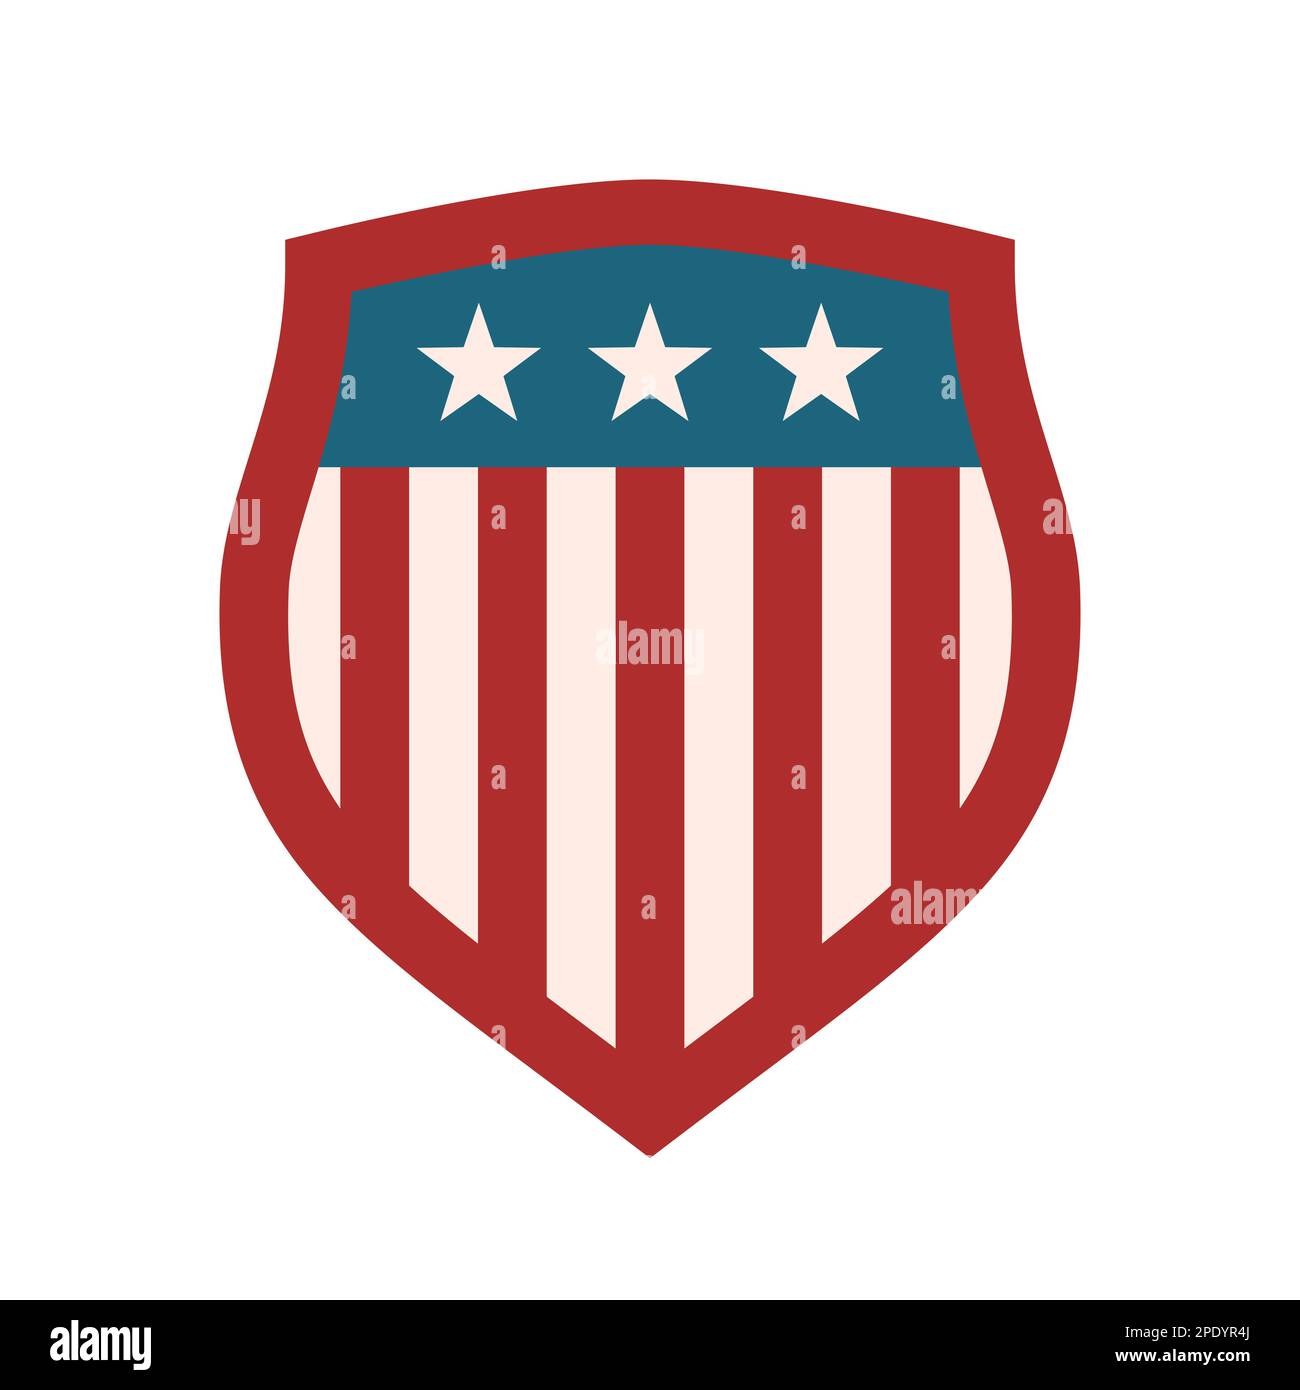 Amerikanisches Schildsymbol. Emblem der Sportmannschaft. Flaggen-Design der Vereinigten Staaten von Amerika. Rot, Blau, weiß, patriotische Farben. USA-Schild mit Sternen und Streifen. Stock Vektor